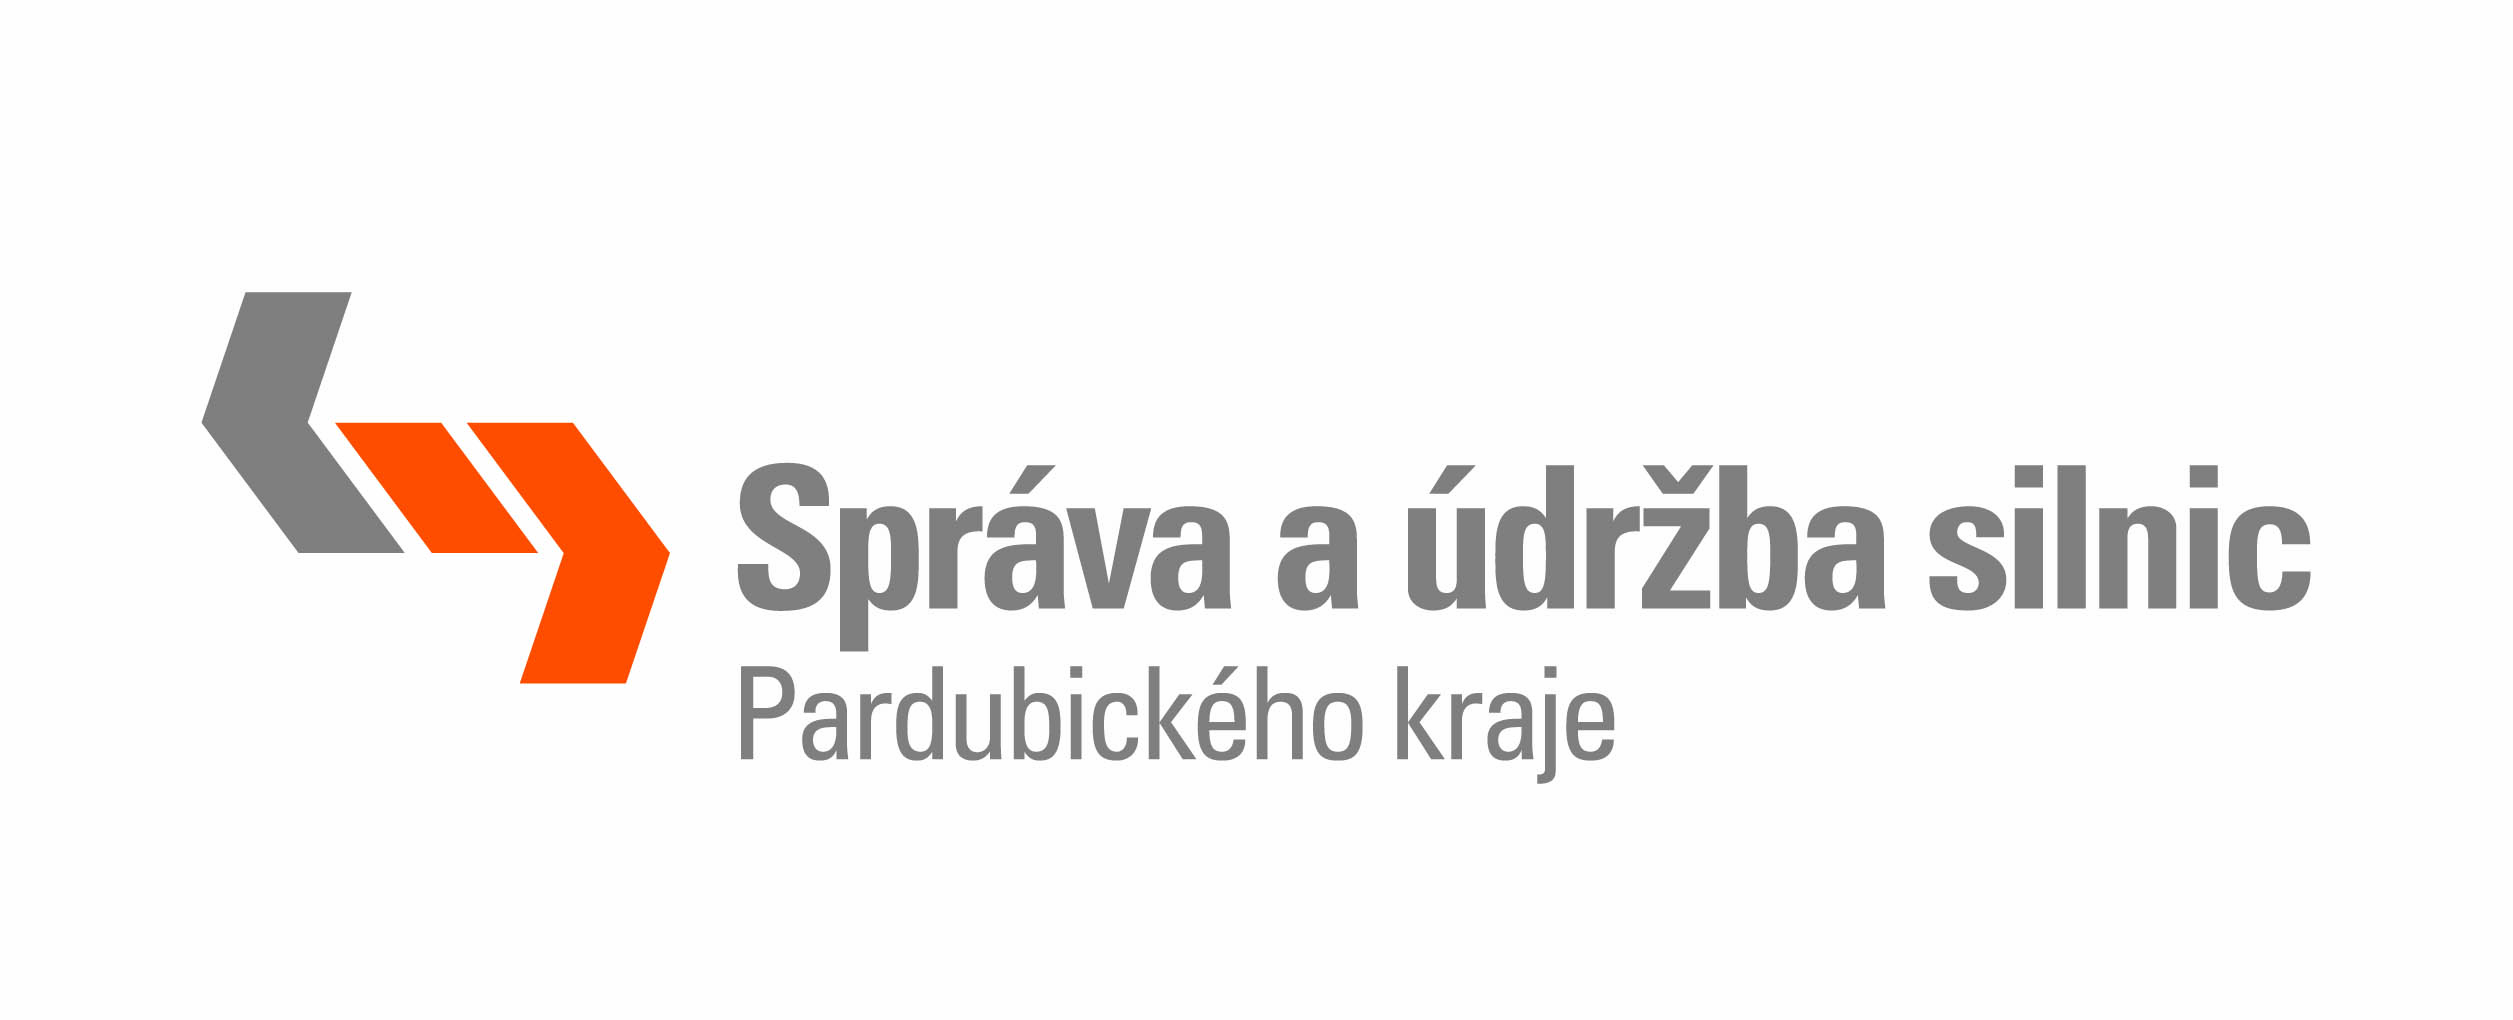 Logo SUS Pardubice pozitiv H